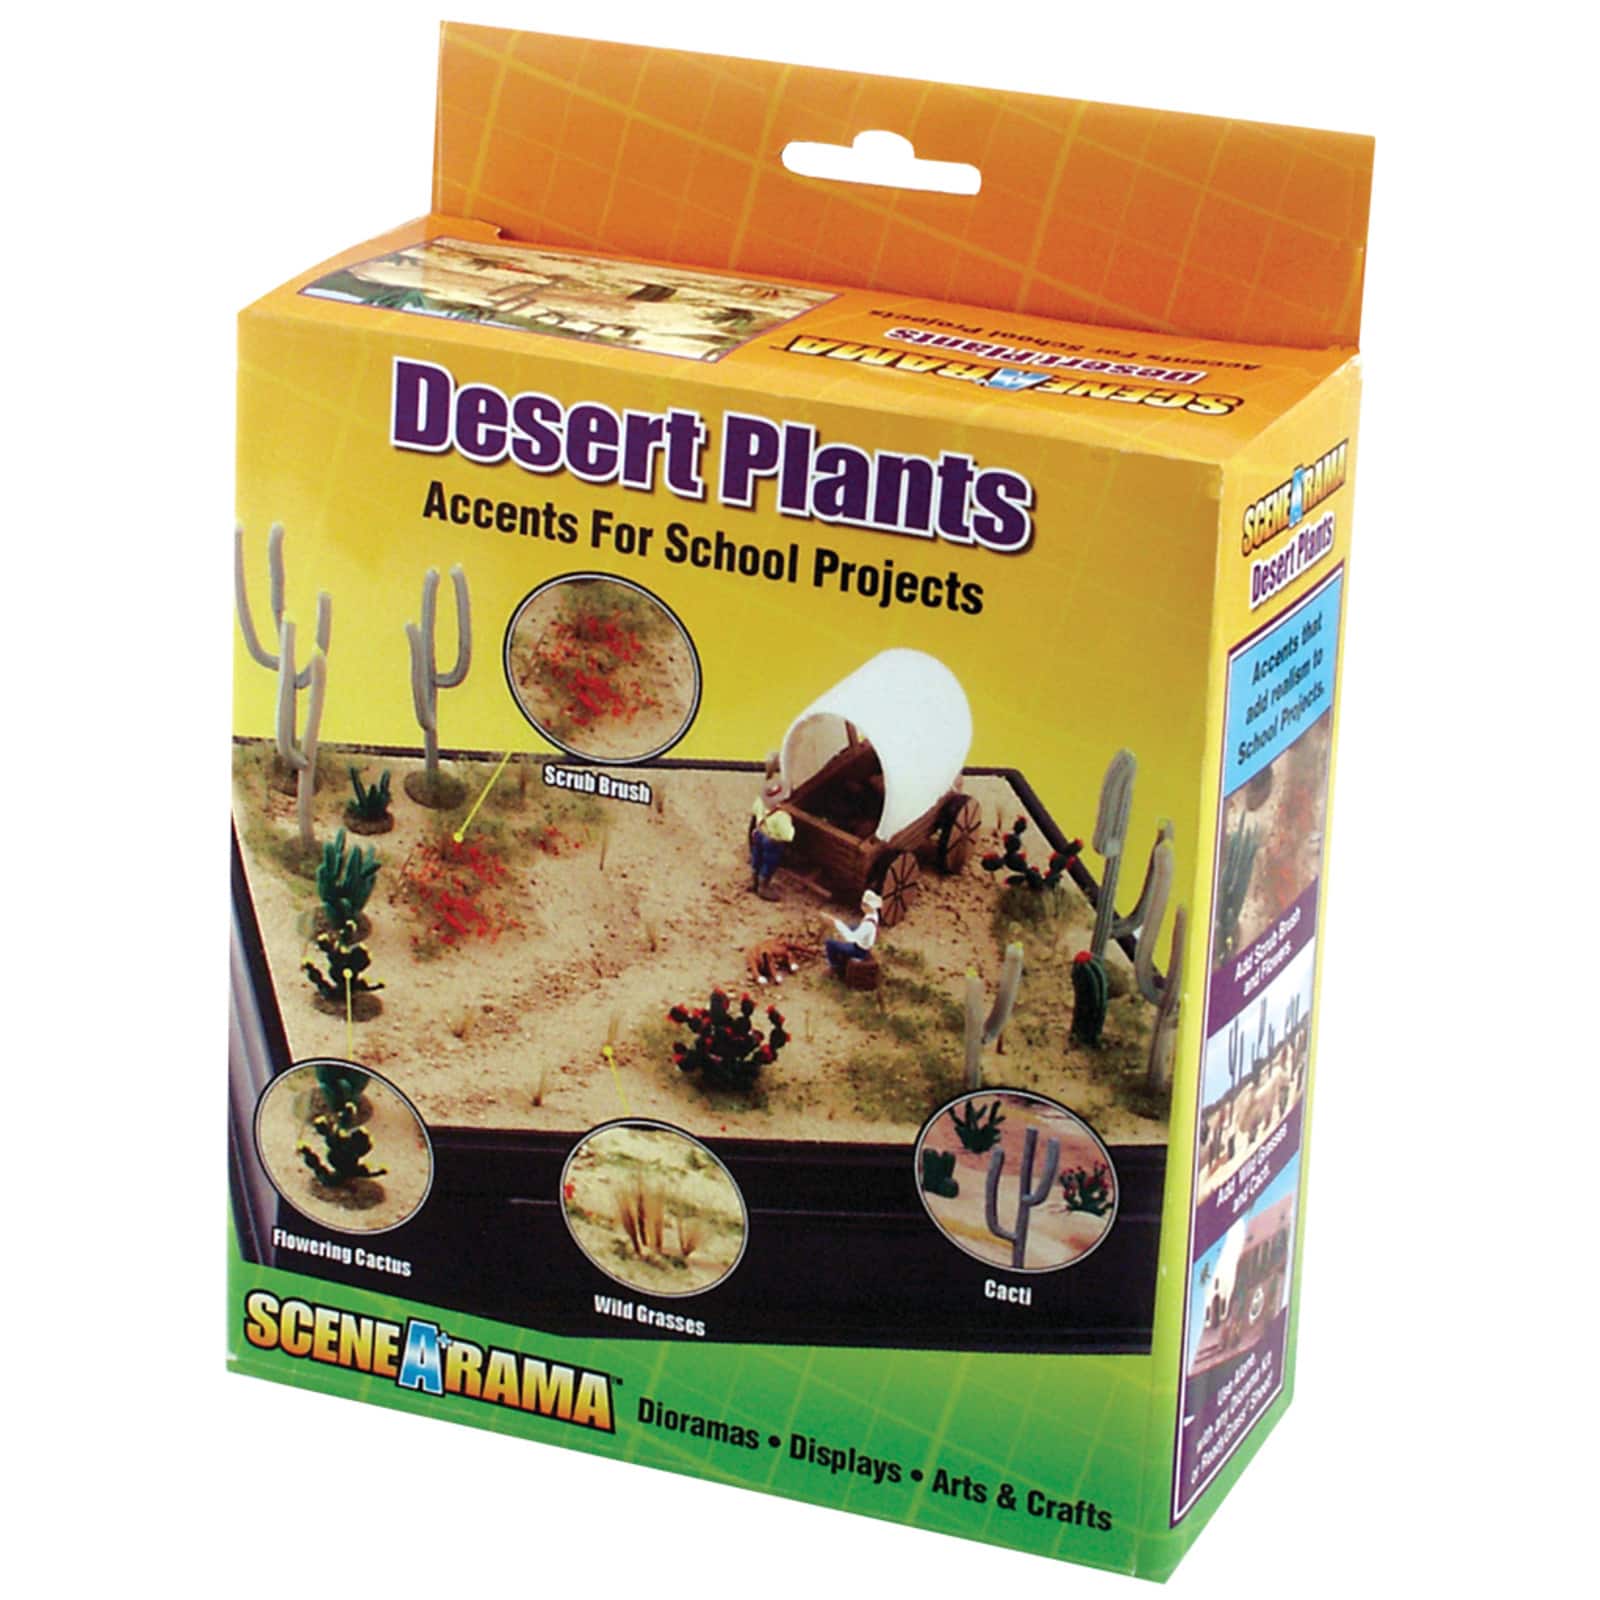 How to Make a Desert Diorama Craft